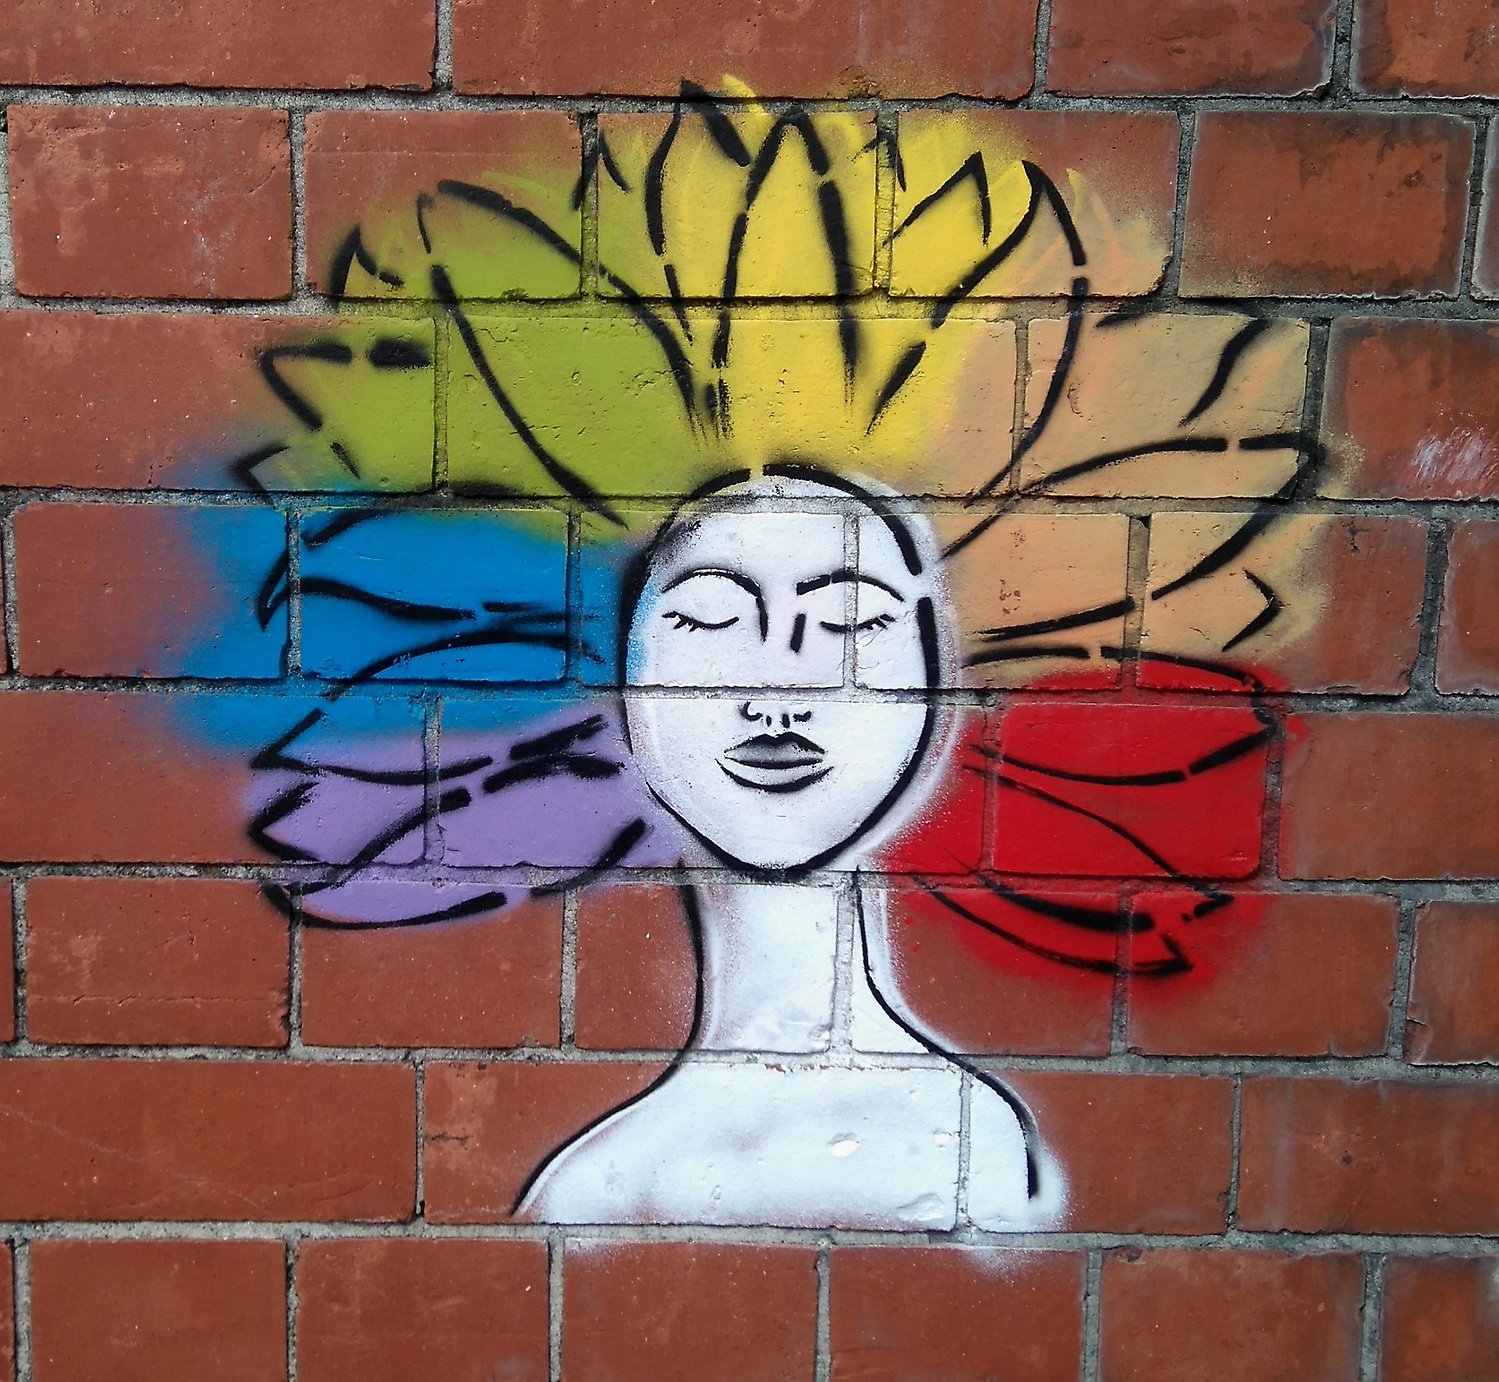 graffiti av en person med olika färger som skickas ut via håret